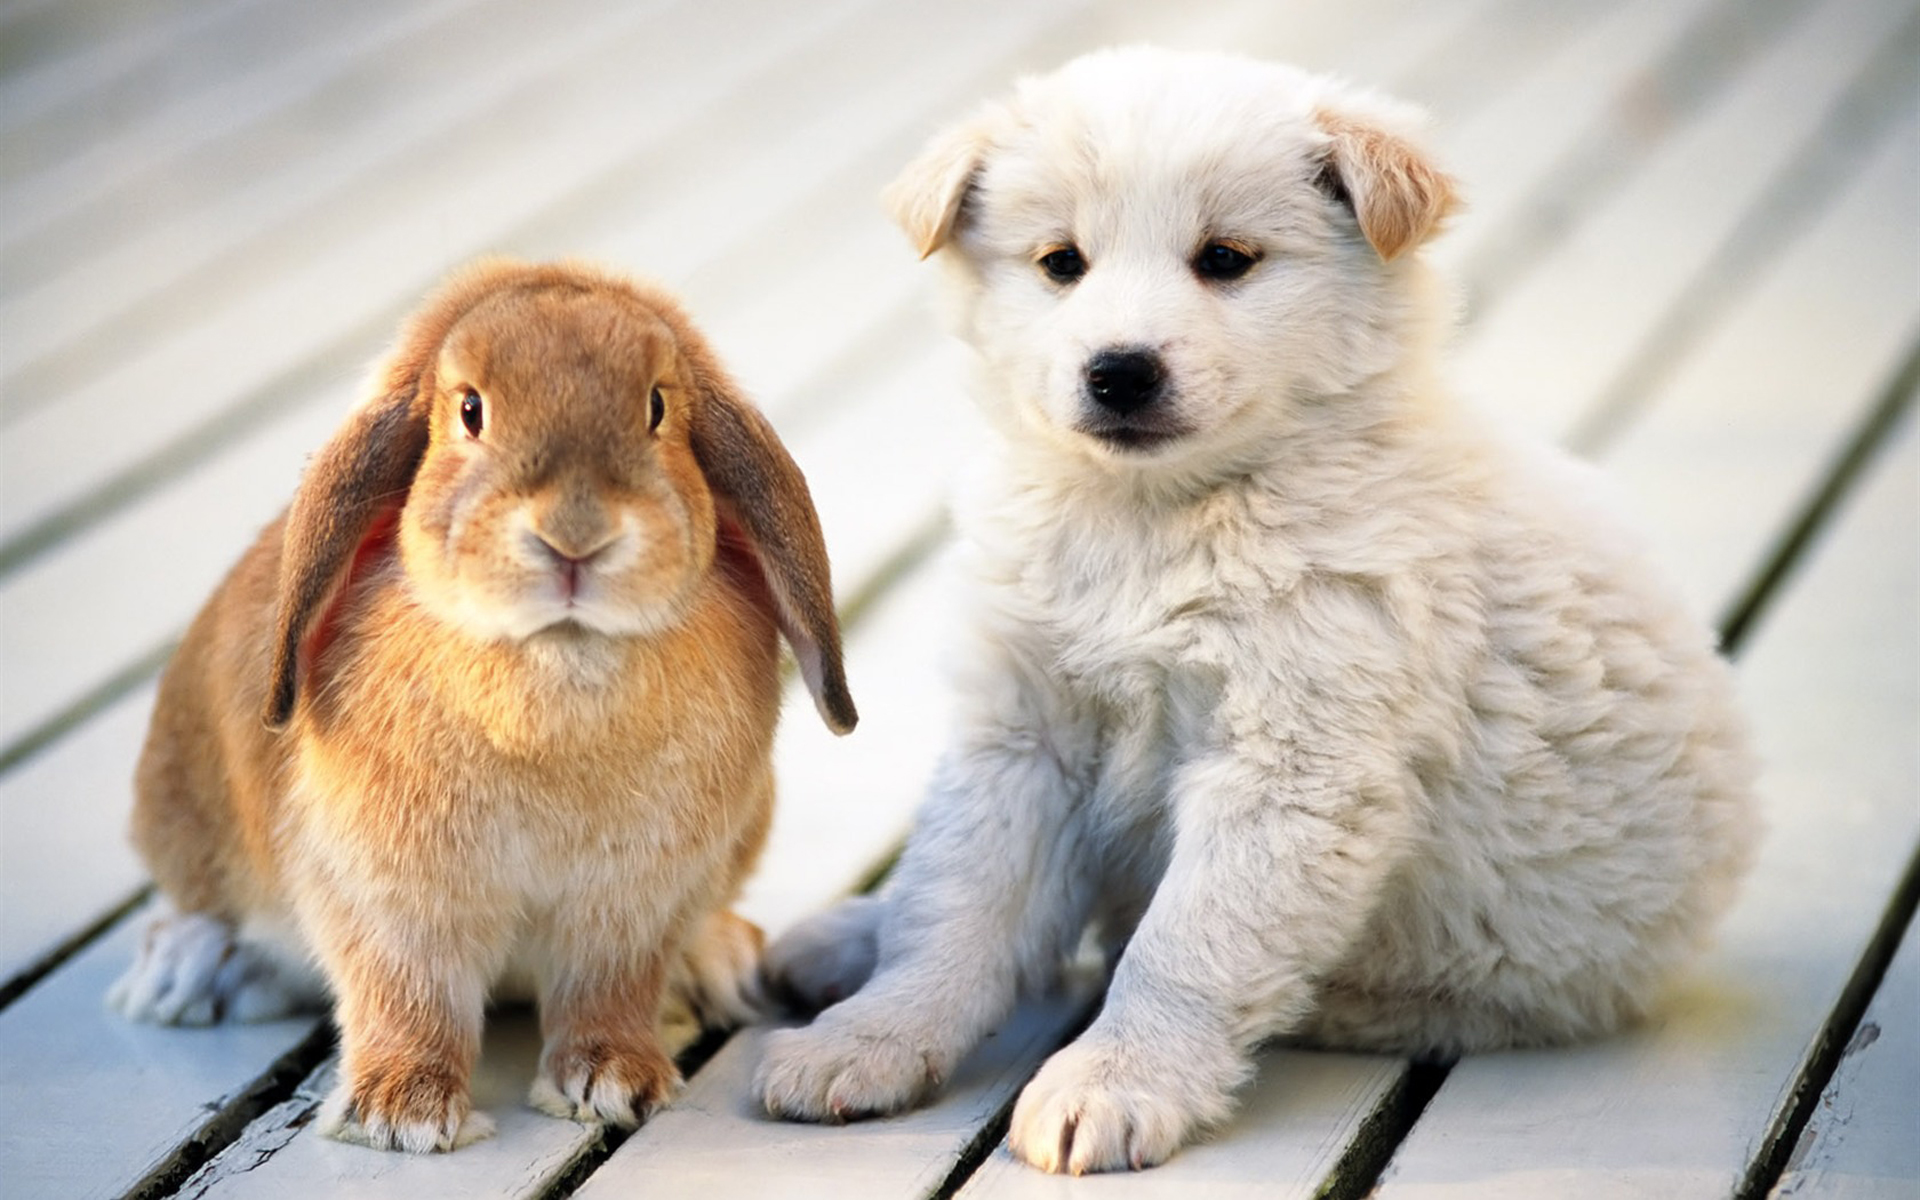 Descarga gratuita de fondo de pantalla para móvil de Animales, Perros, Conejos.